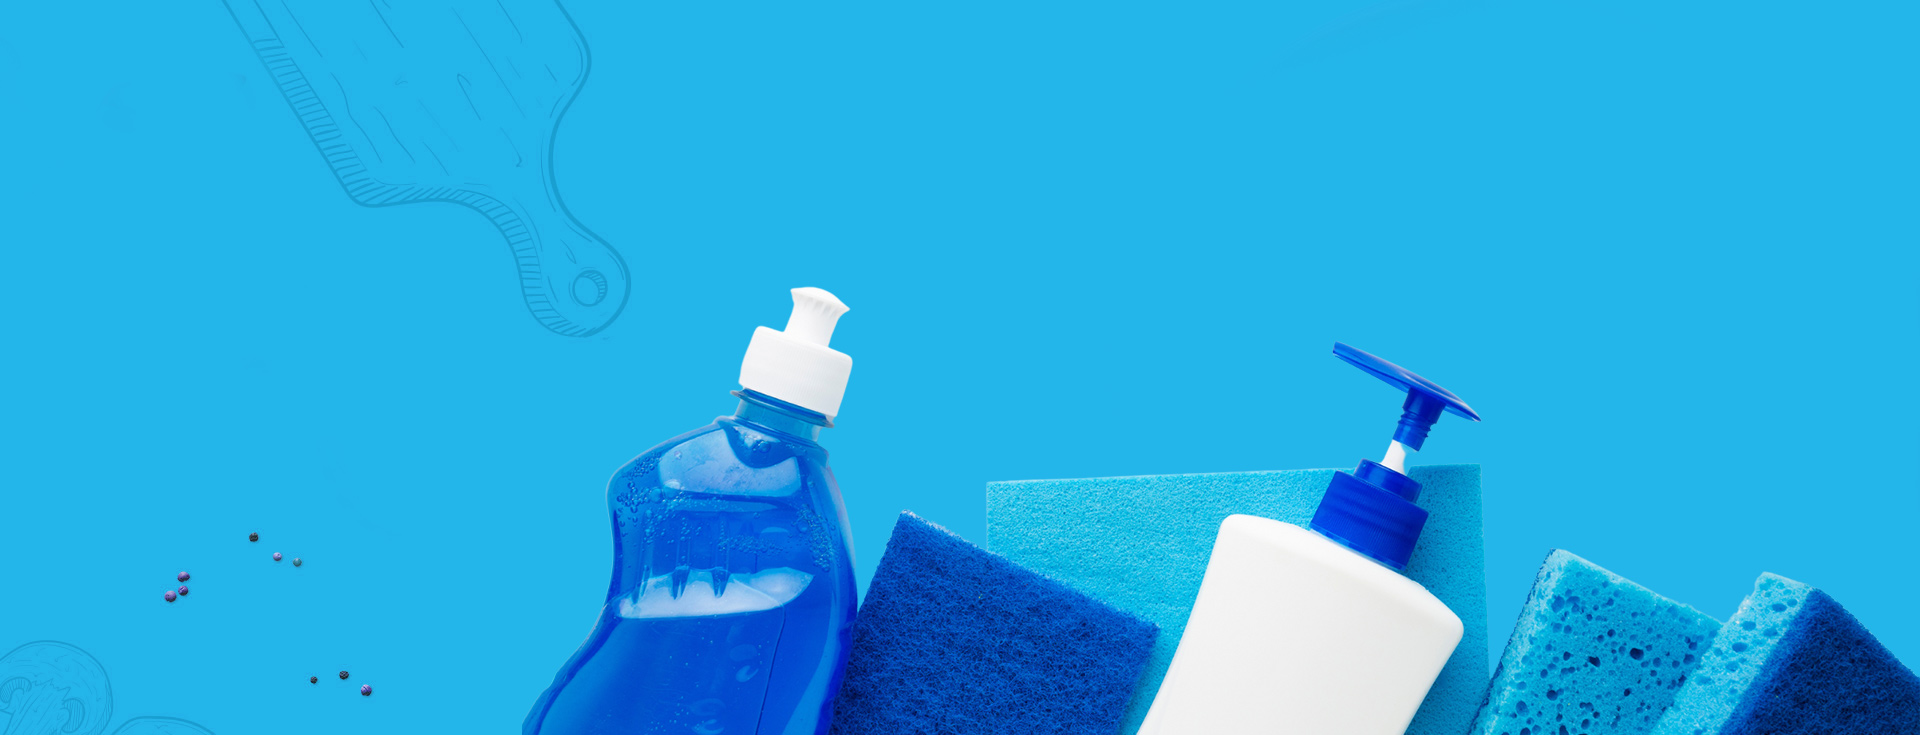 Detergenti professionali per la pulizia Sani-chef | CRV Sistemi a Nanto Vicenza